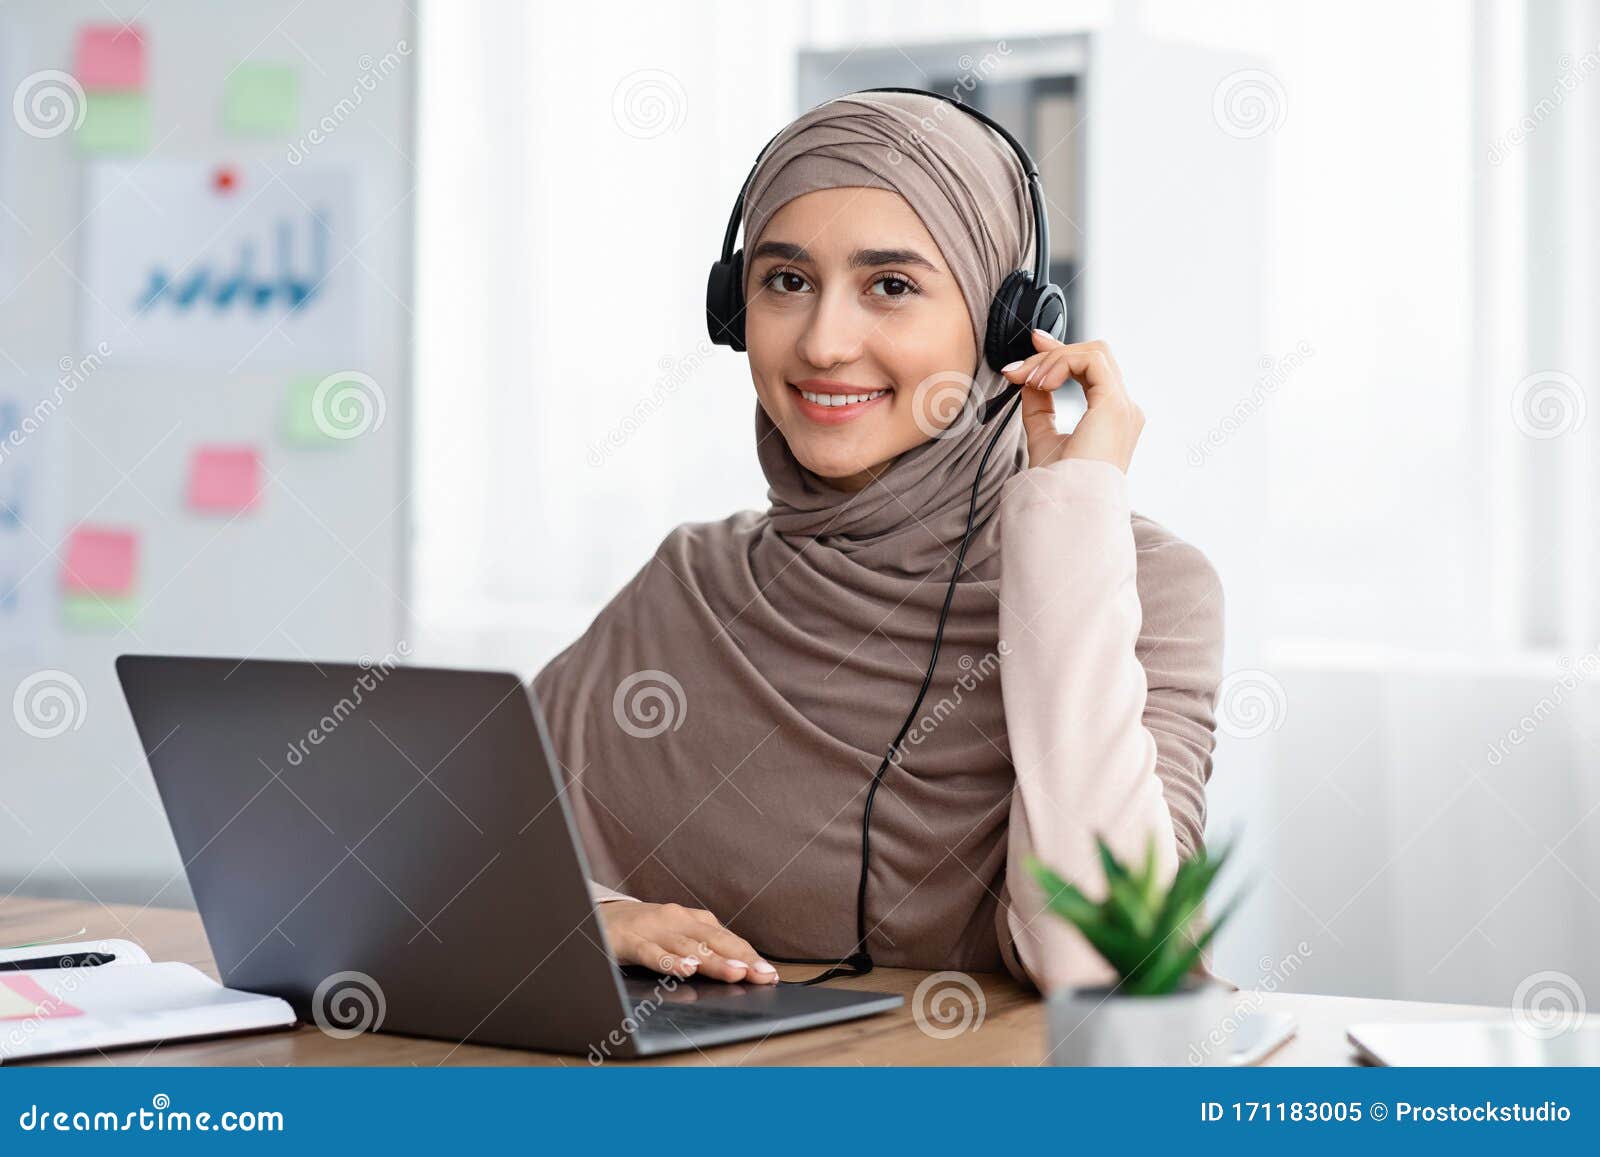 Beautiful Arabic Woman In Hijab Wearing Headset Working In Modern